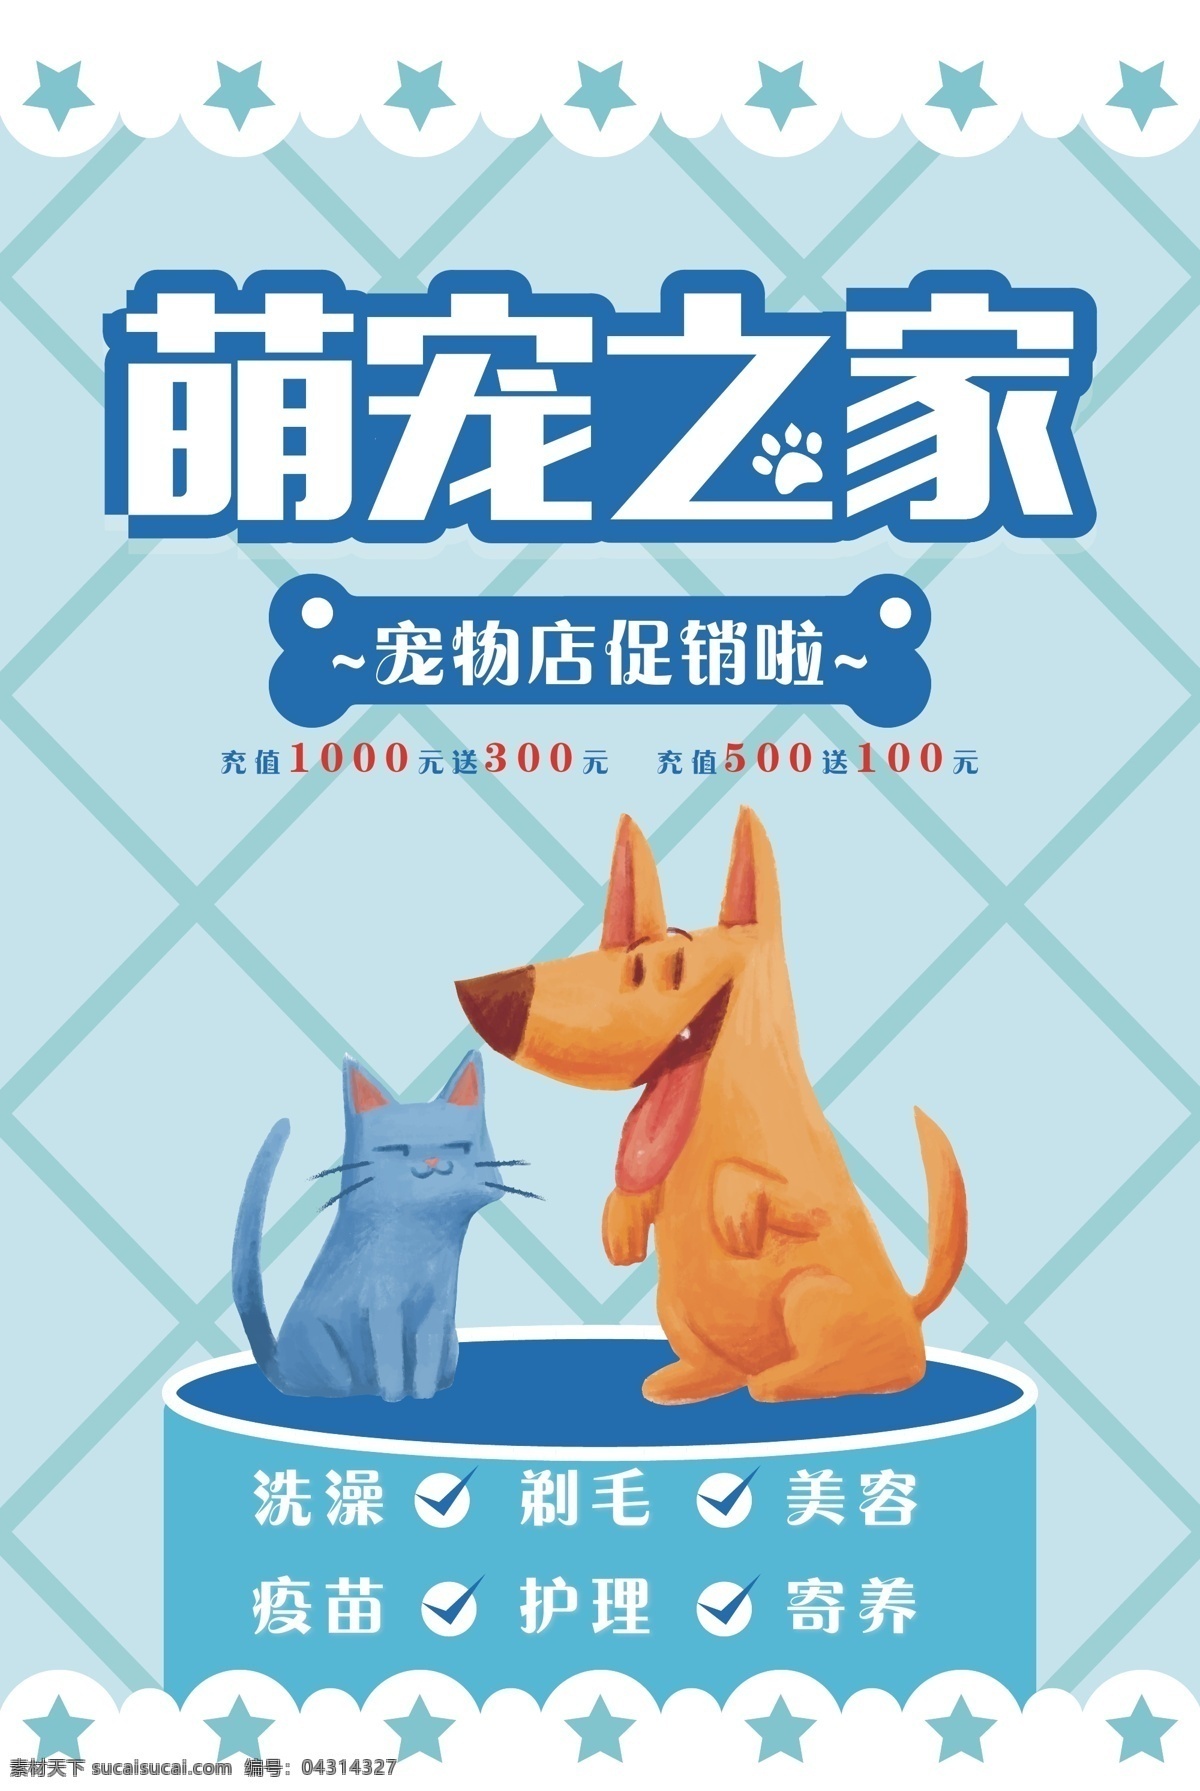 宠物海报 宠物 医院 医生 动物 狗 猫 卡通 扁平化设计 精美 创意 海报